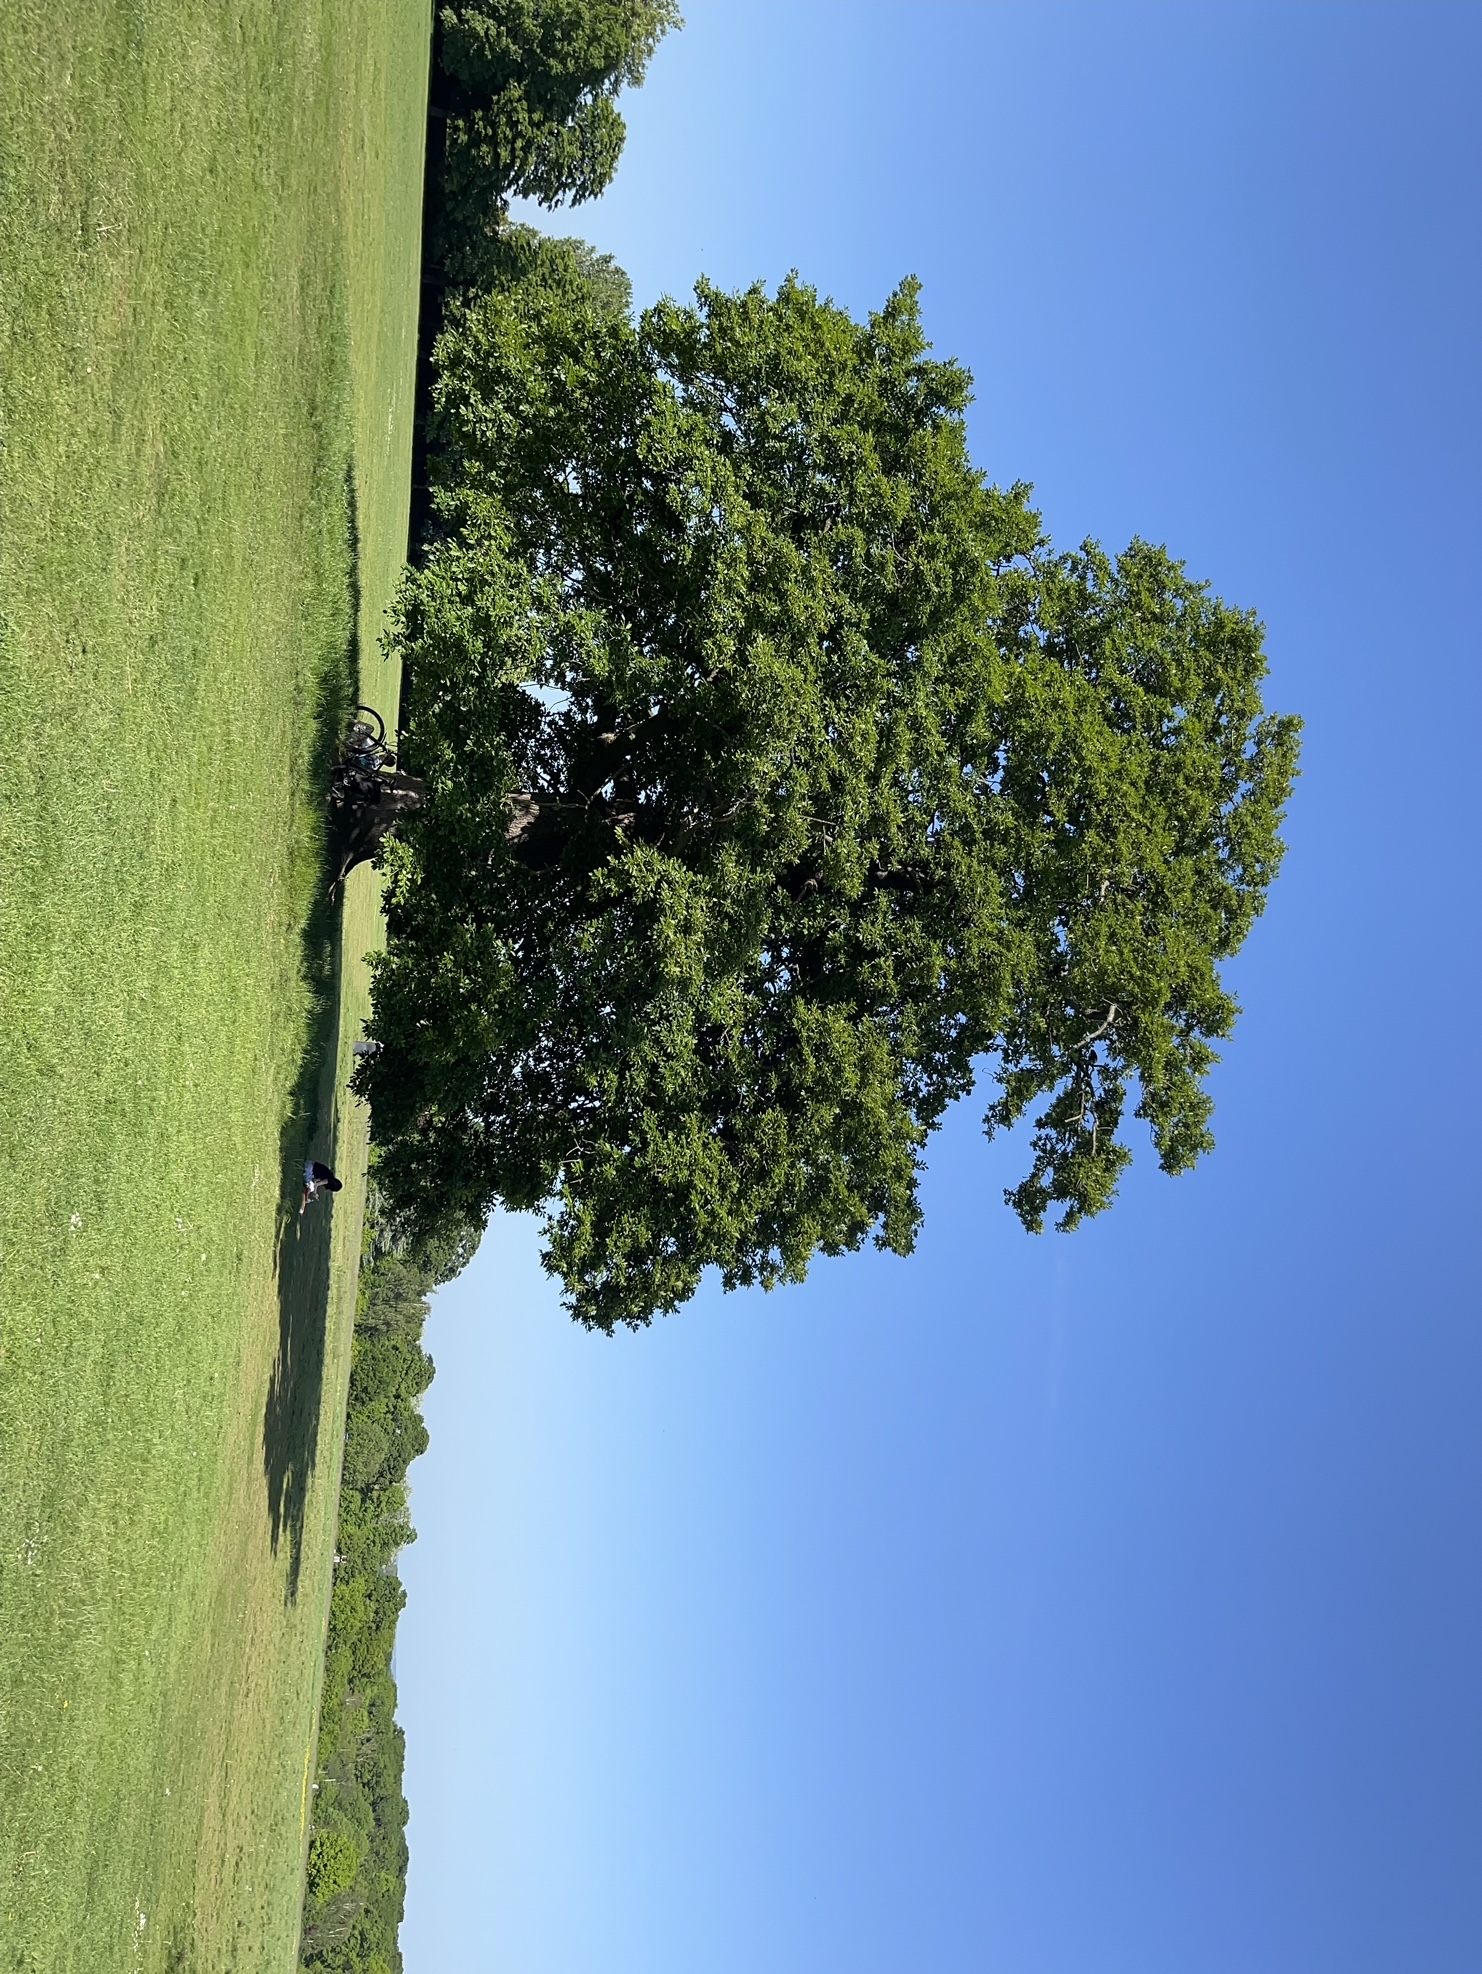 Tree in Grovelands Park